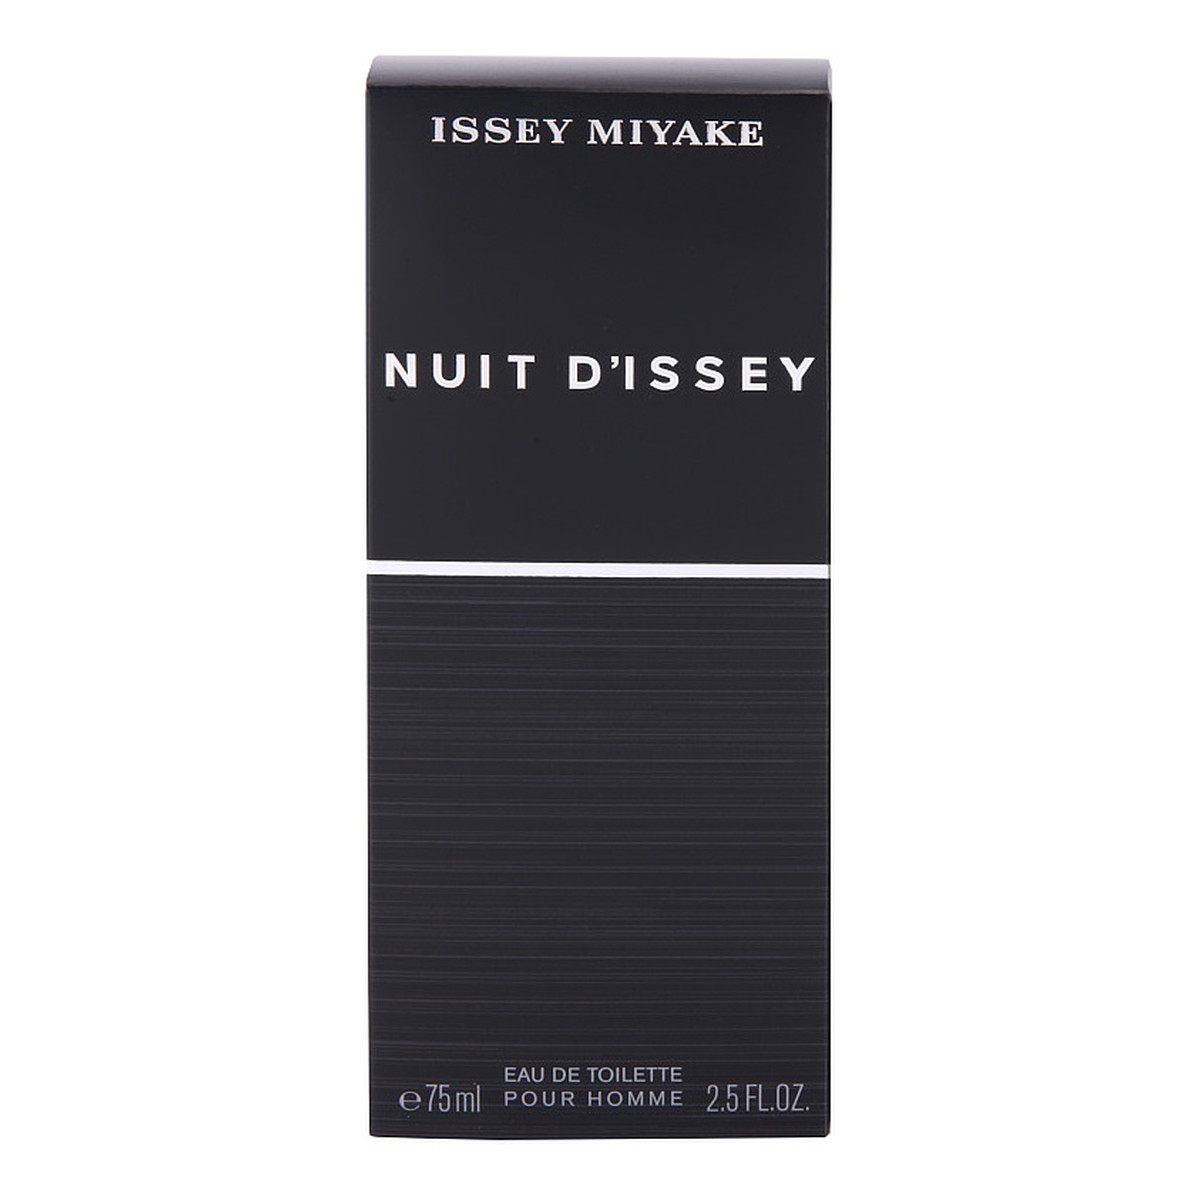 Issey Miyake Nuit D'Issey woda toaletowa dla mężczyzn 75ml